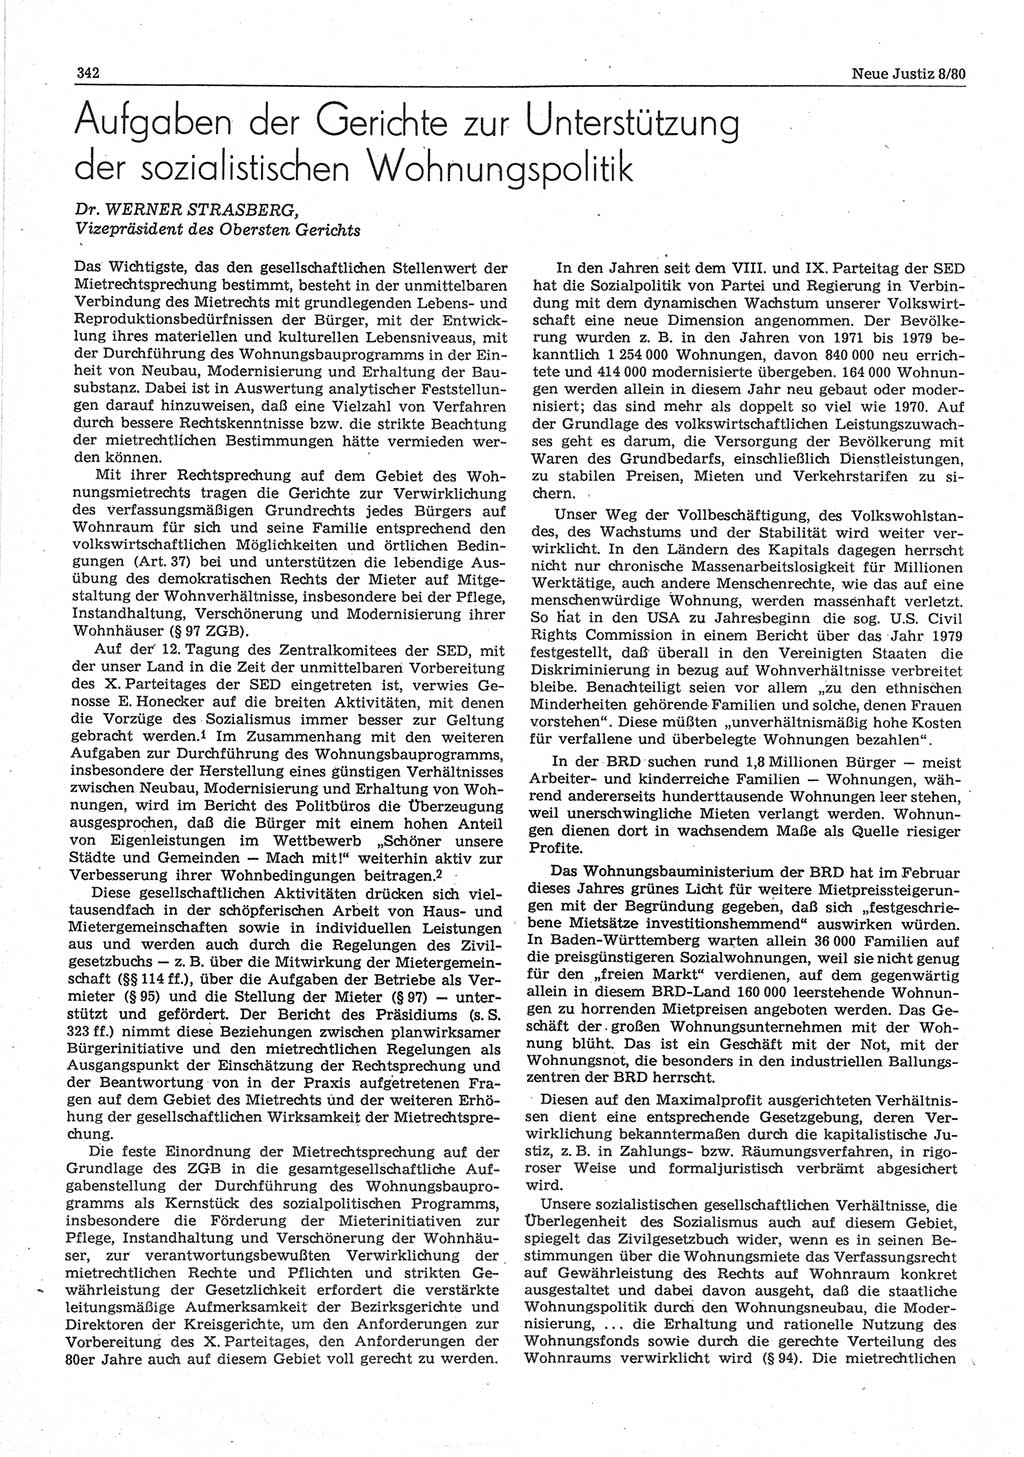 Neue Justiz (NJ), Zeitschrift für sozialistisches Recht und Gesetzlichkeit [Deutsche Demokratische Republik (DDR)], 34. Jahrgang 1980, Seite 342 (NJ DDR 1980, S. 342)